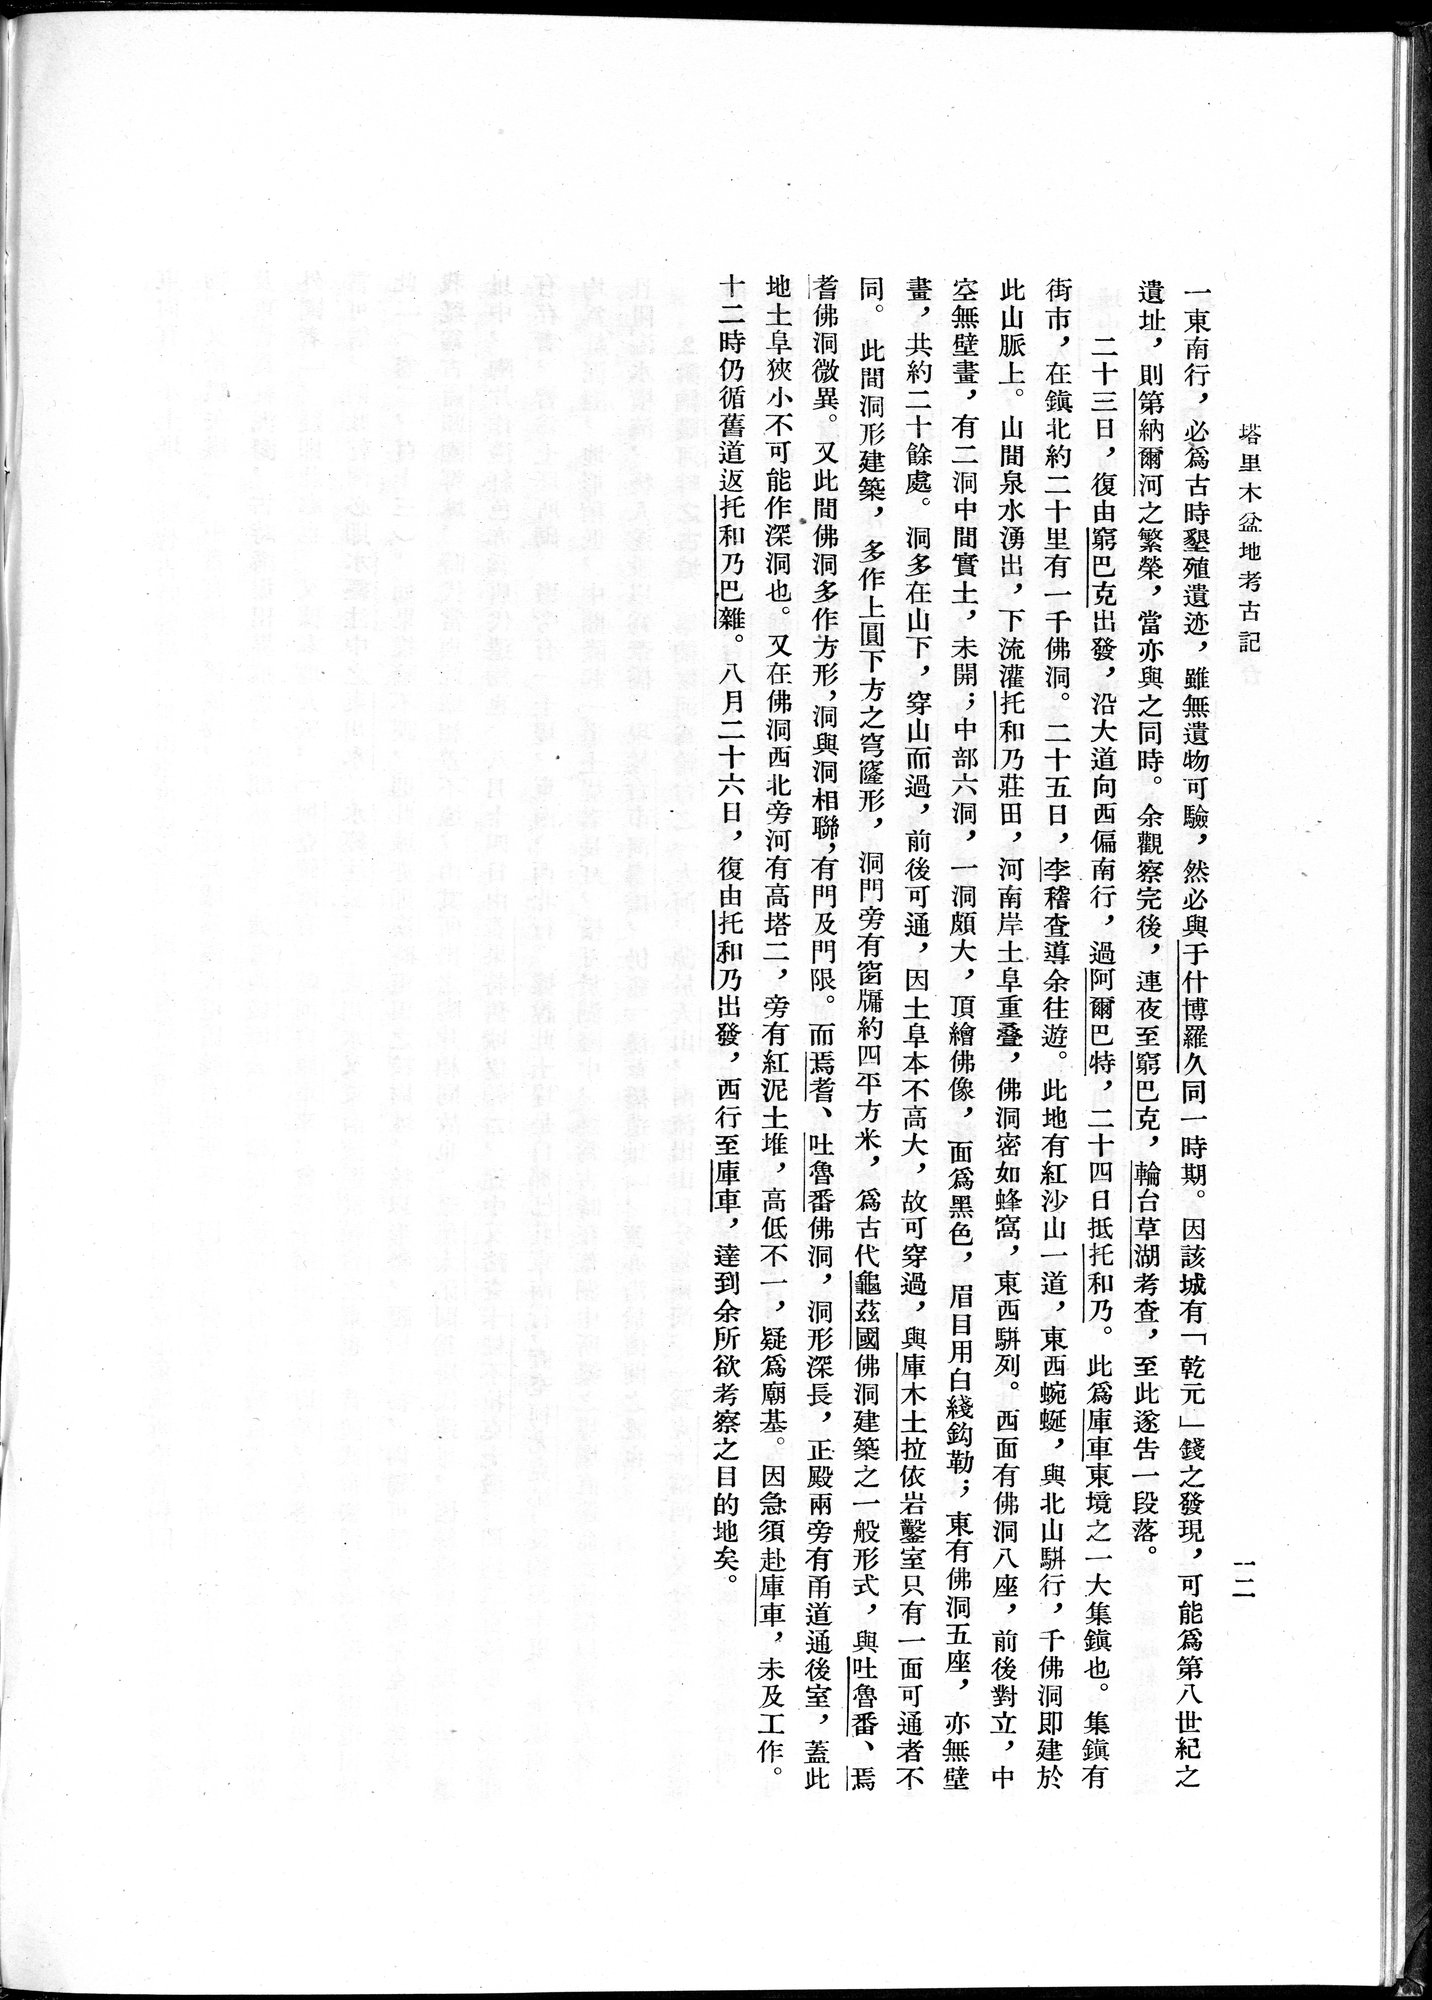 塔里木盆地考古記 : vol.1 / Page 36 (Grayscale High Resolution Image)